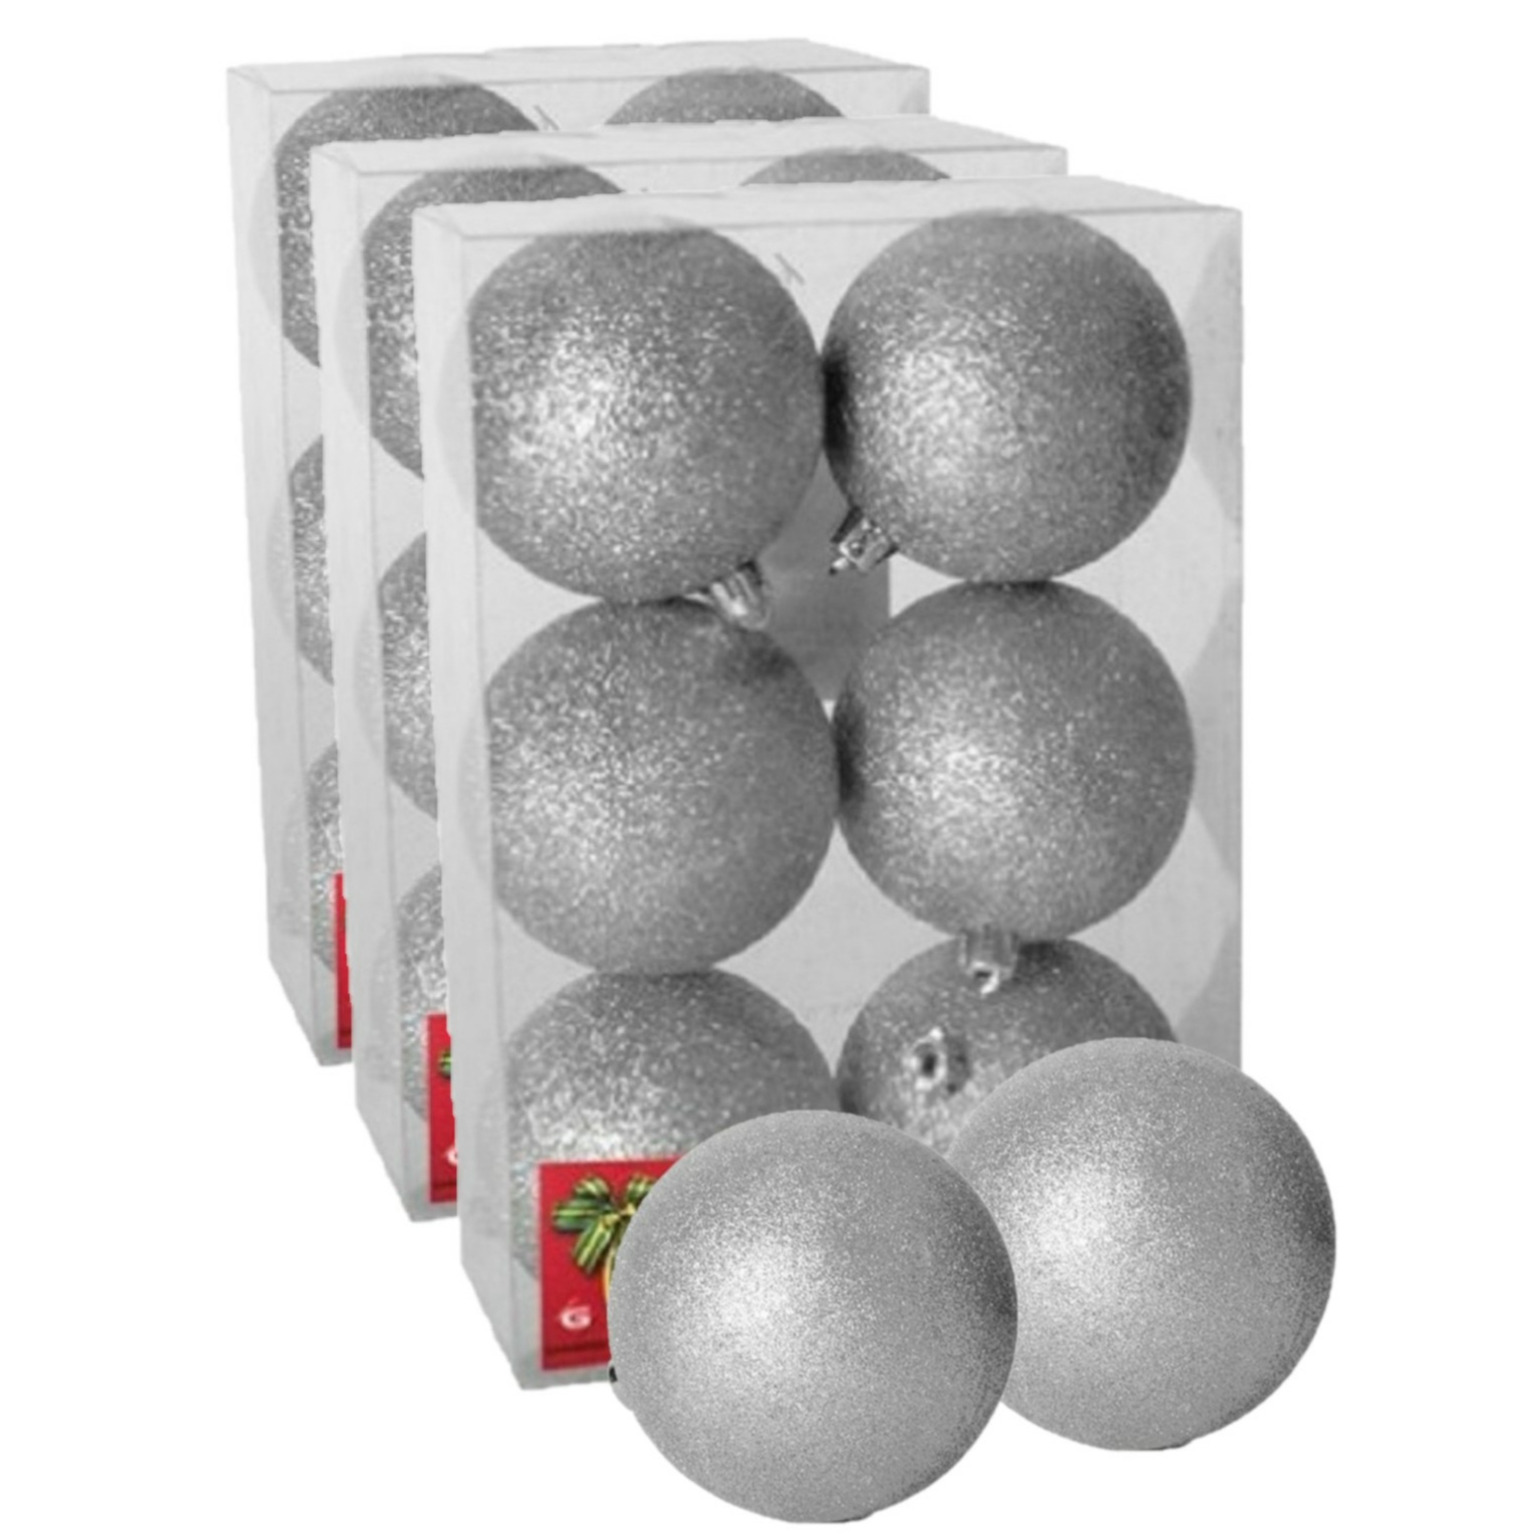 18x stuks kerstballen zilver glitters kunststof 4 cm